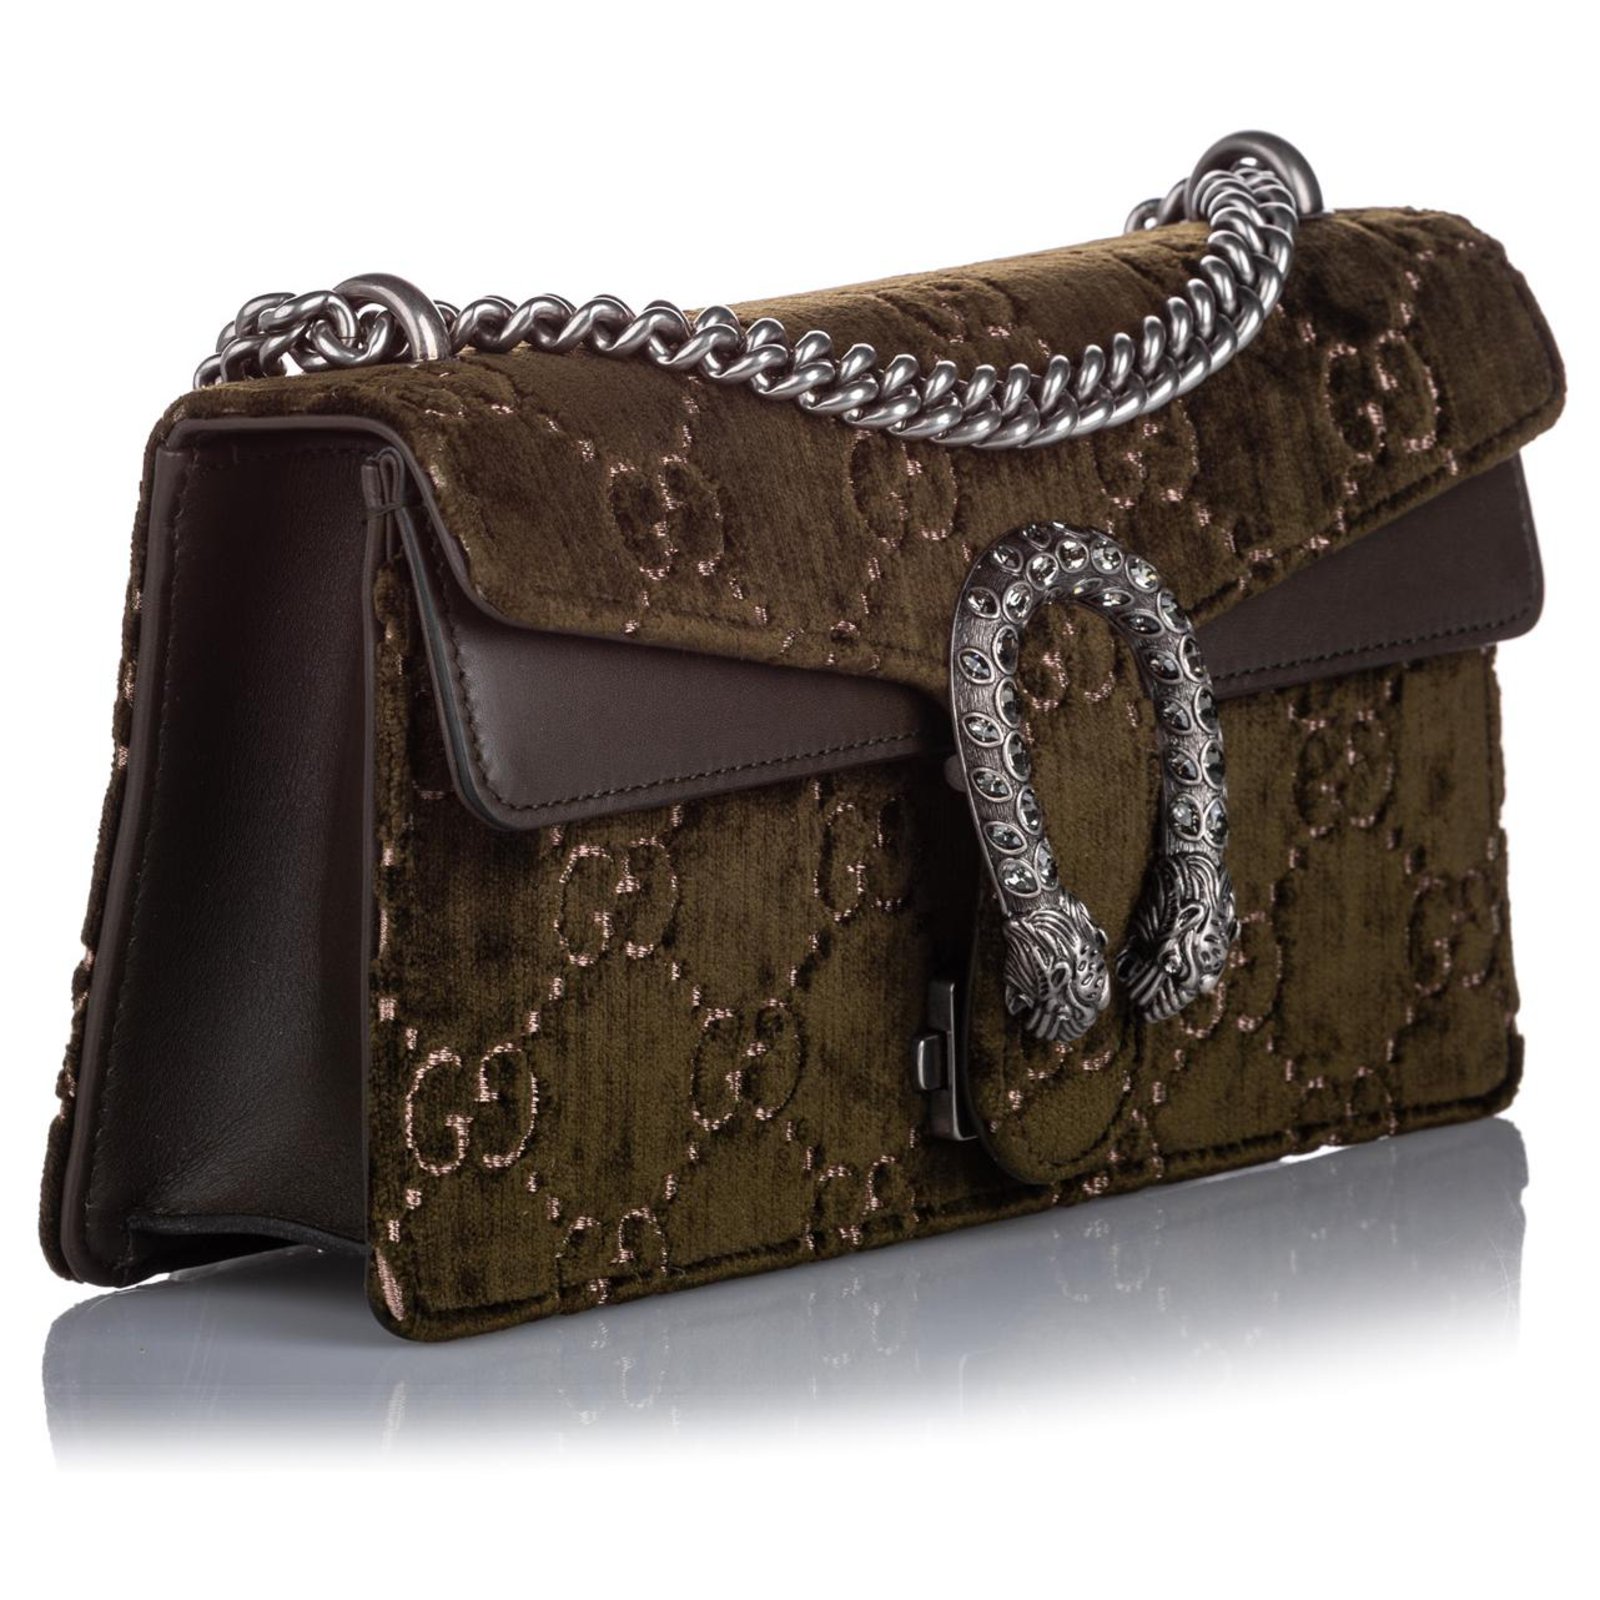 Gucci Dionysus Small GG Velvet Shoulder Bag